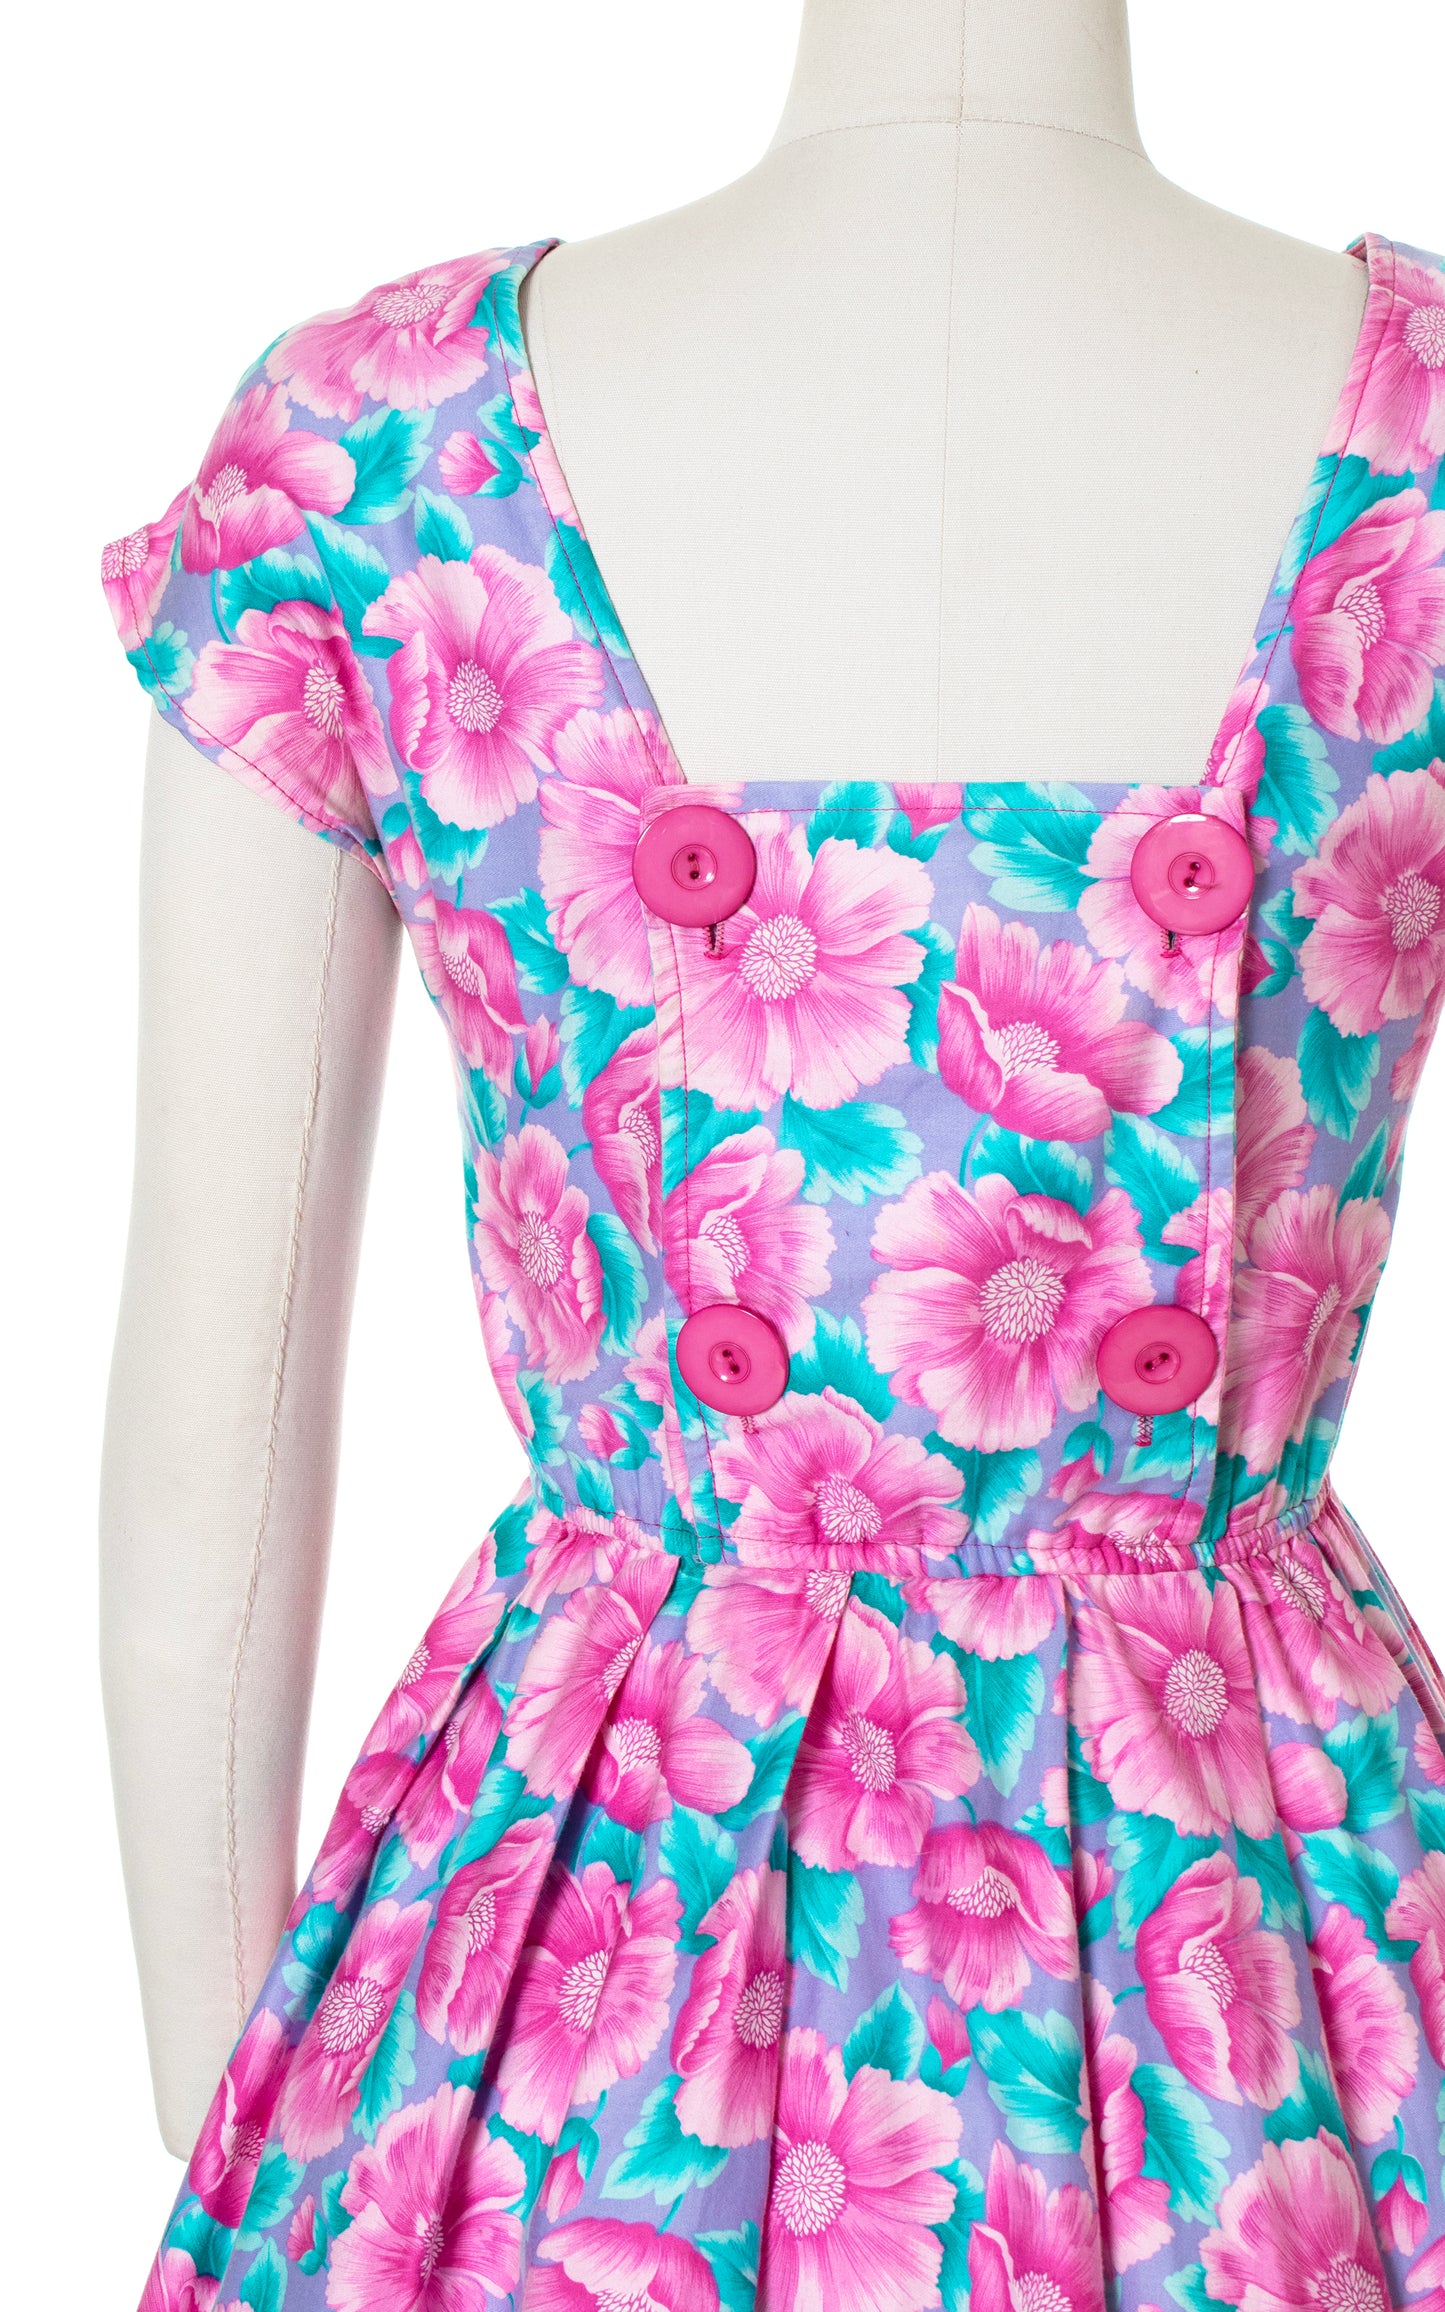 Vintage 80s 1980s Floral Button Back Sundress 1950s Style Dress BirthdayLifeVintage